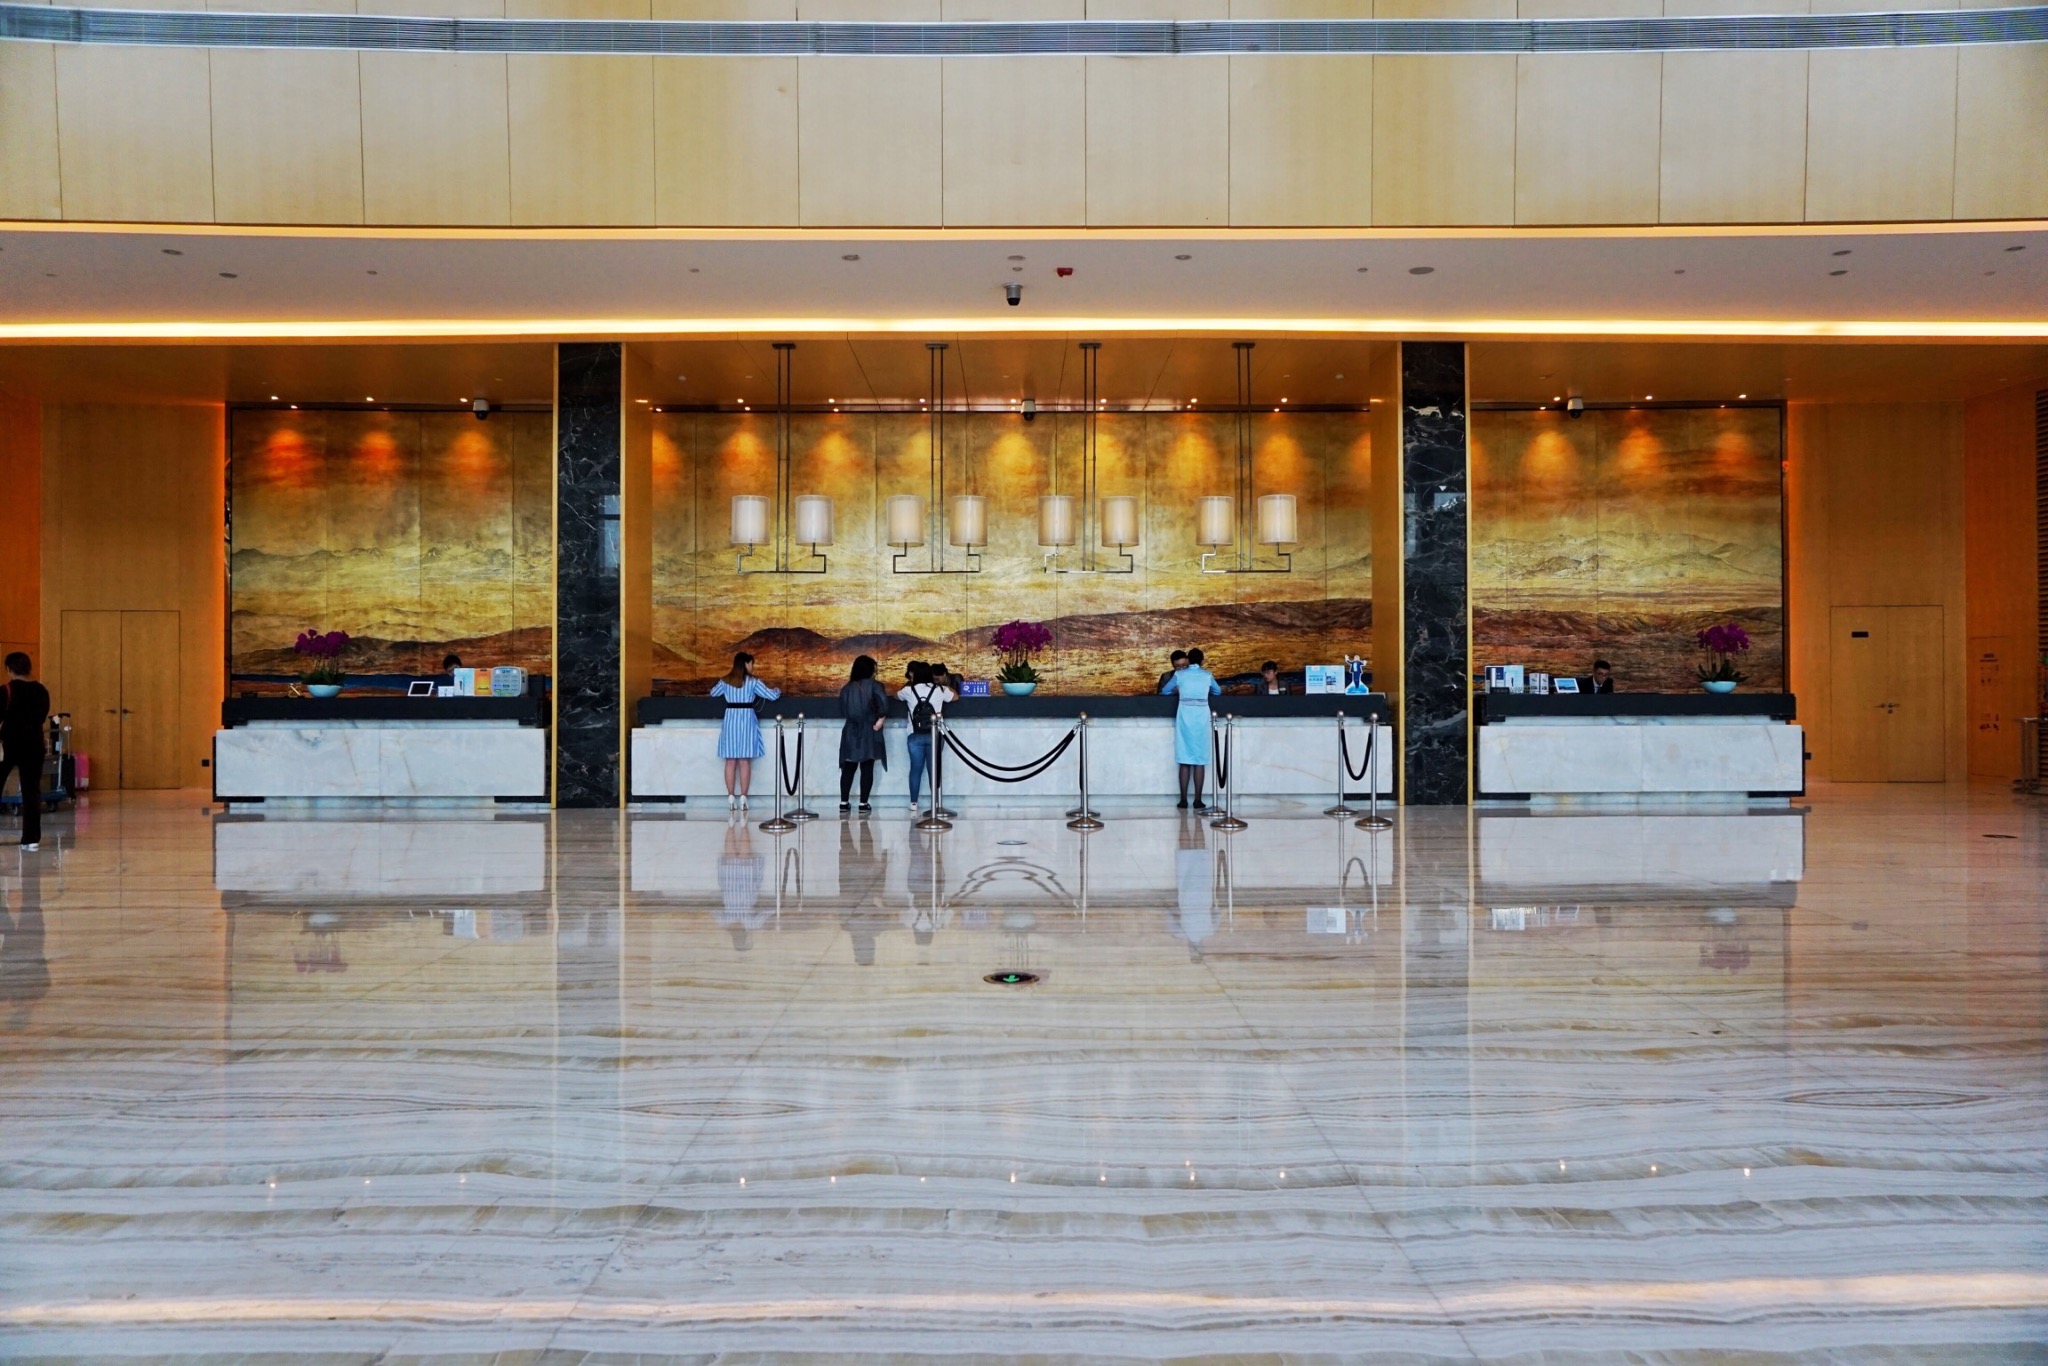 重庆温德姆酒店集团图片